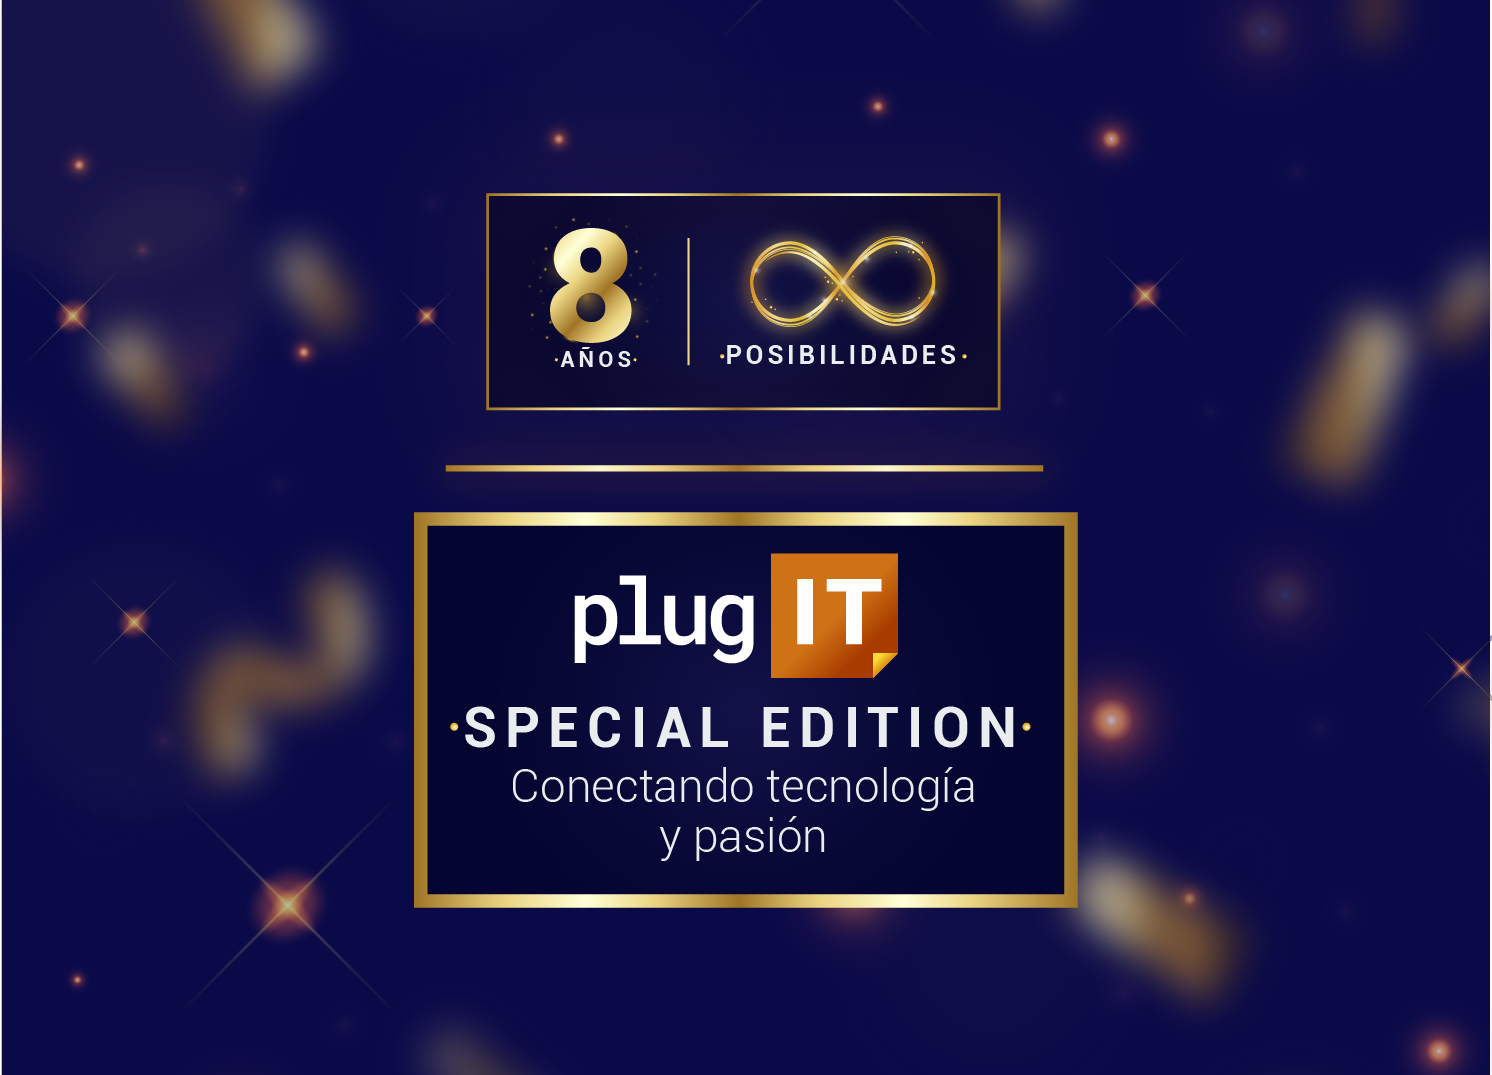 PlugIT Infinitas posibilidades: 8 años conectando tecnología y pasión